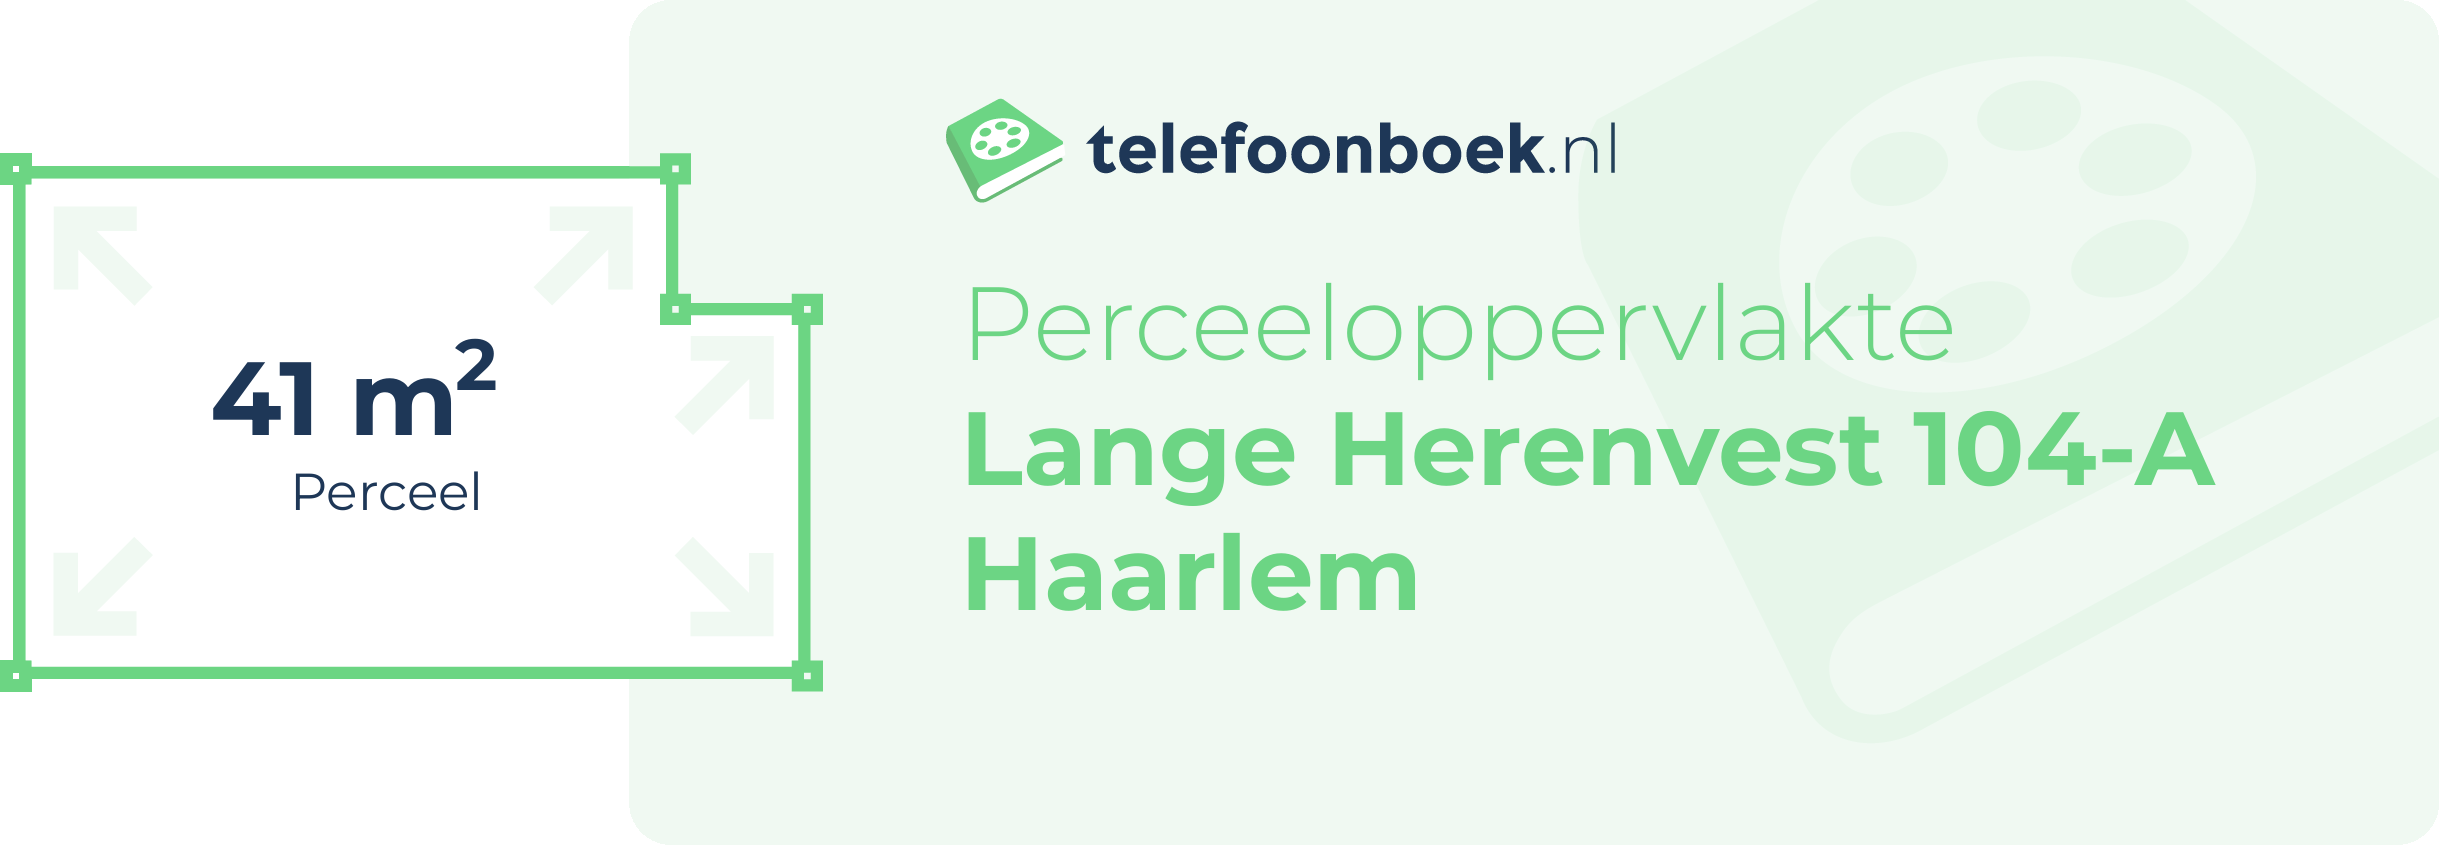 Perceeloppervlakte Lange Herenvest 104-A Haarlem